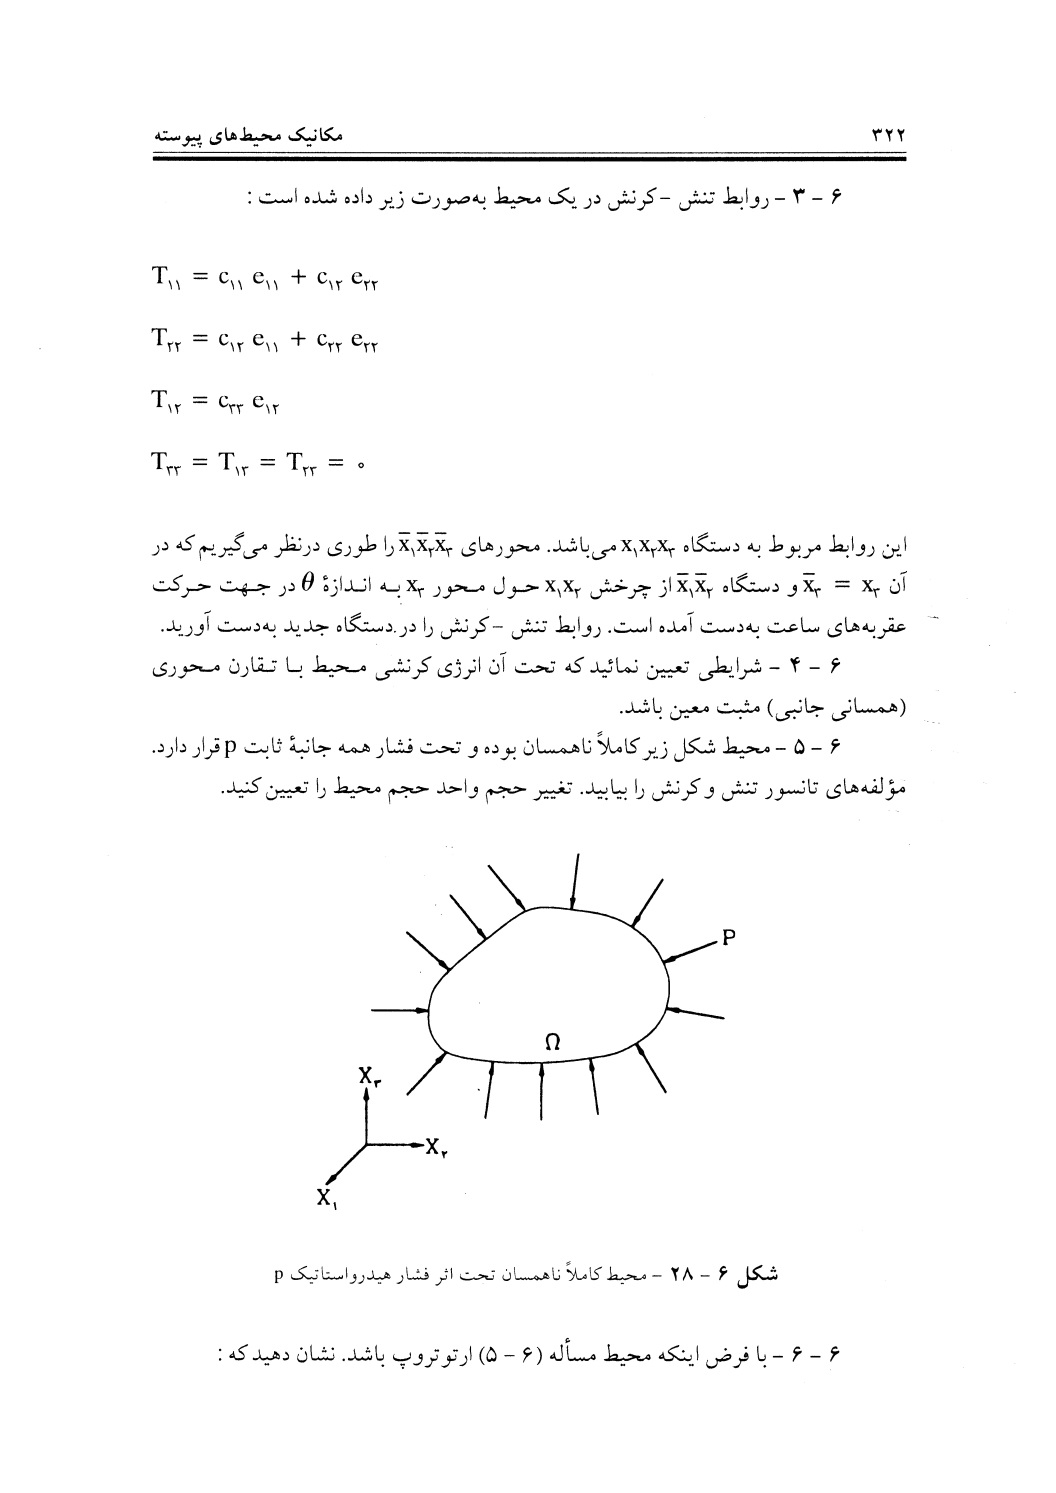 دانلود پی دی اف کتاب مکانیک محیط های پیوسته از قادی و رحیمیان - 371 صفحه PDF